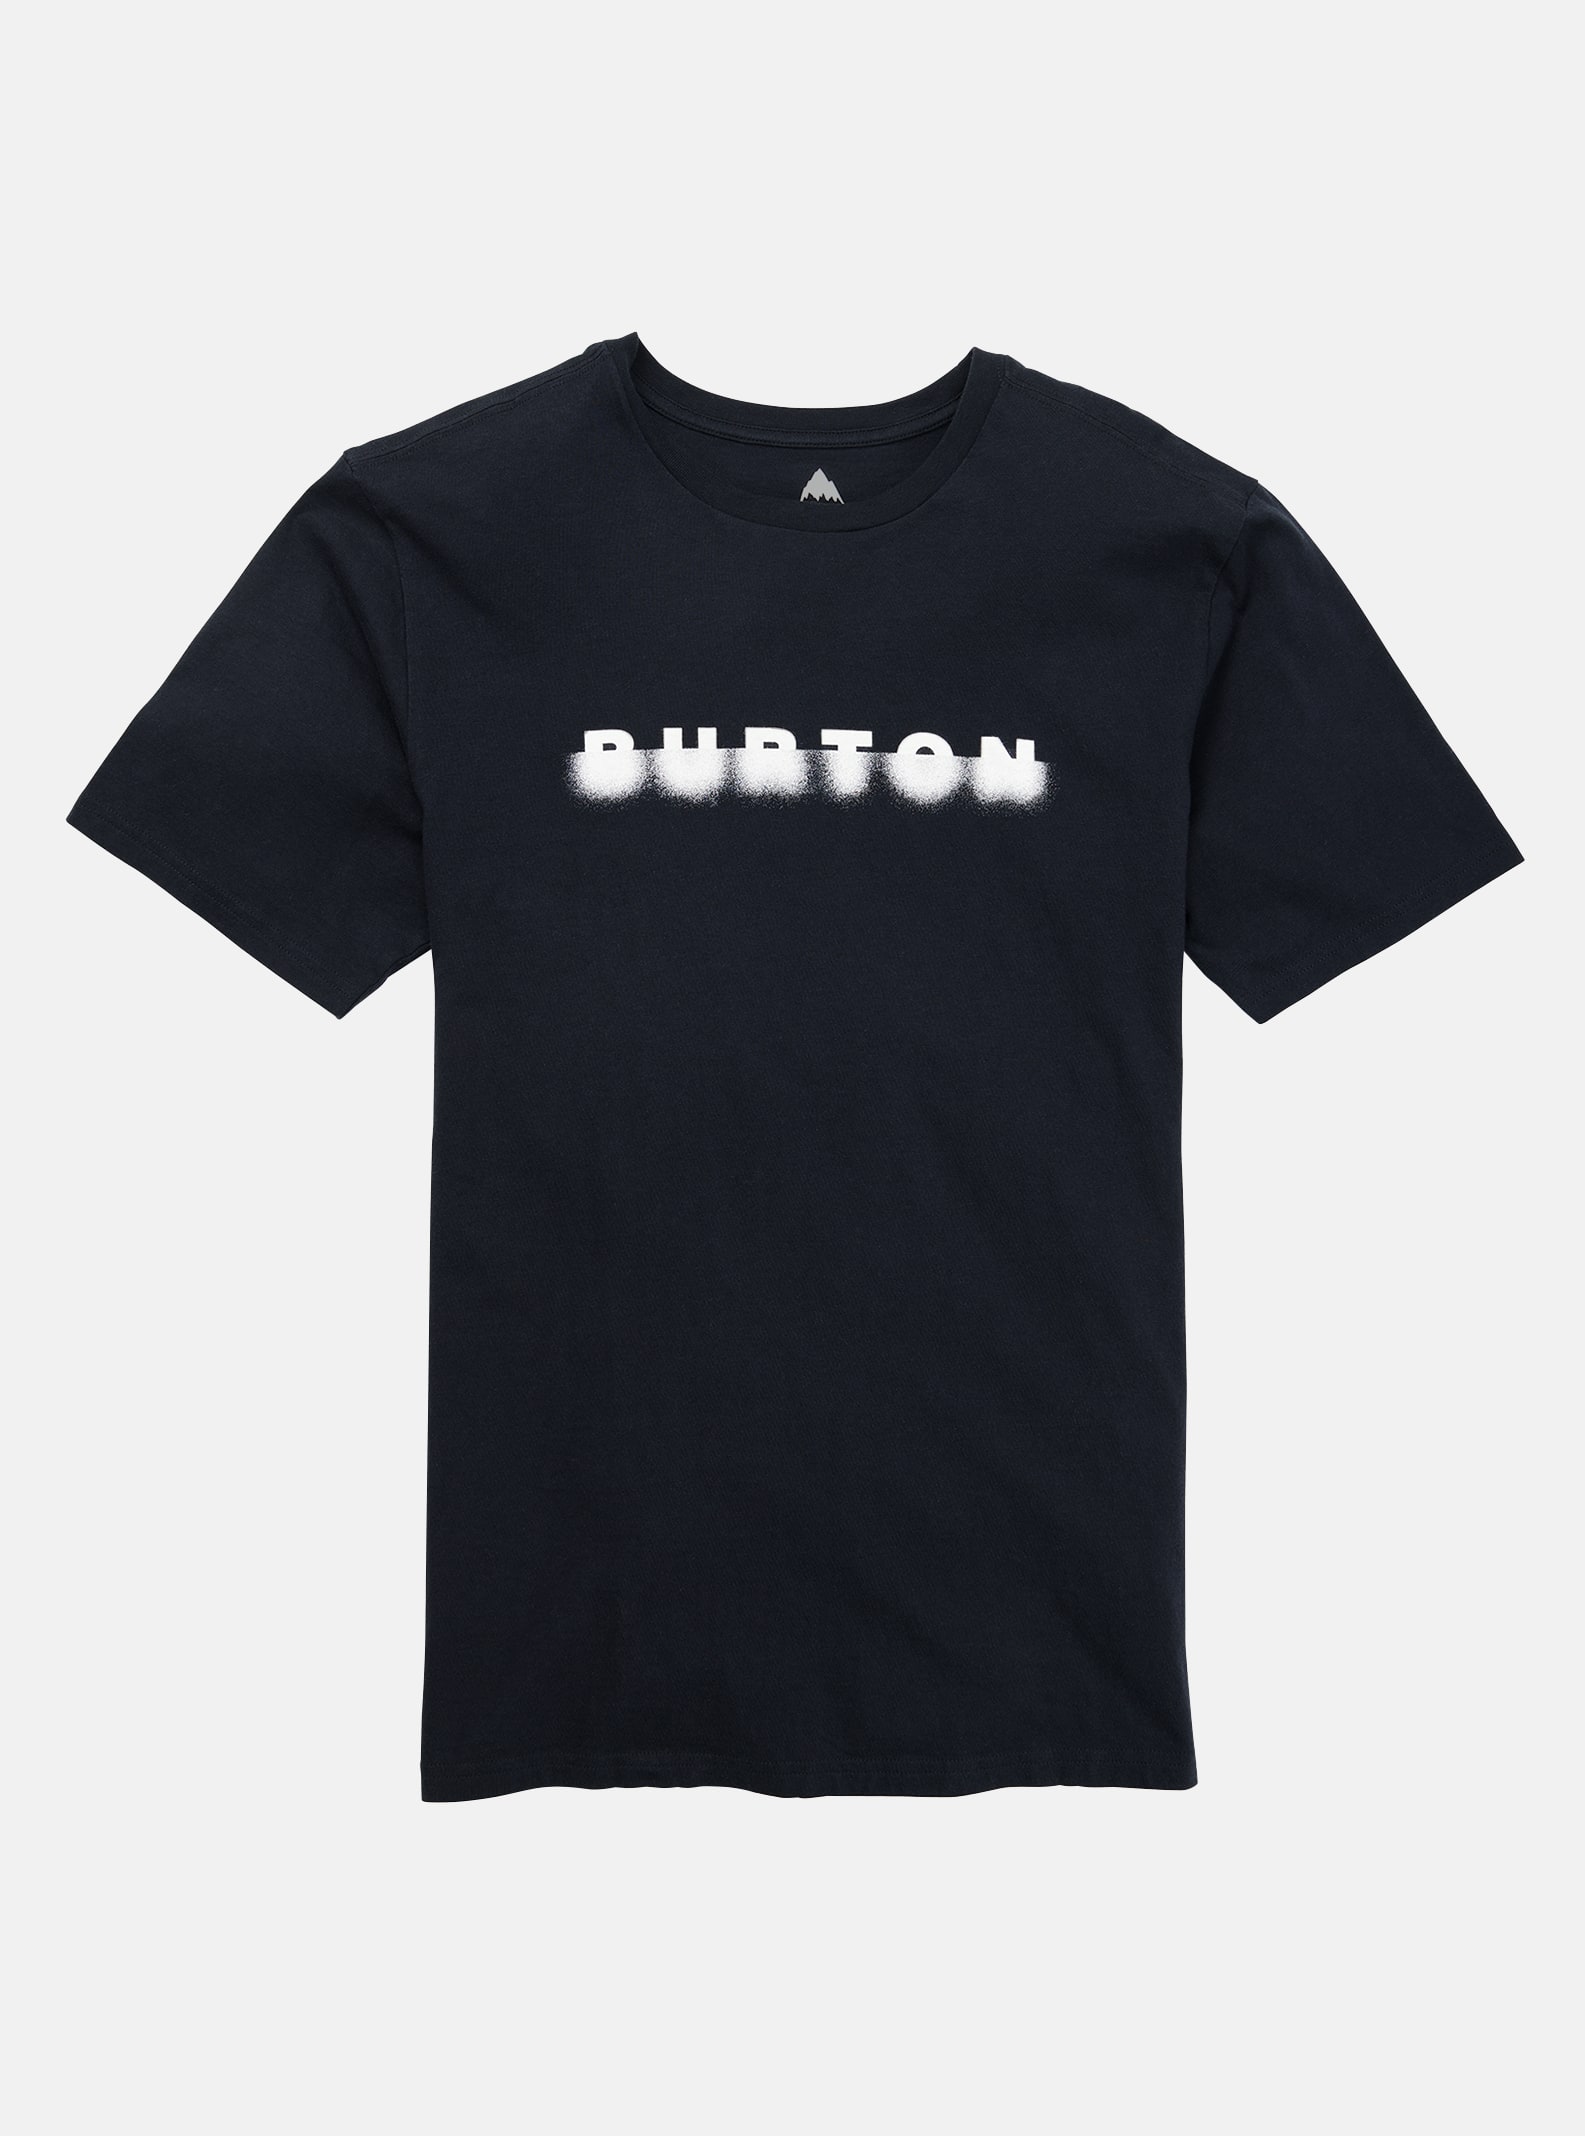 Burton T-shirt för herr - Cosmist, True Black, XL